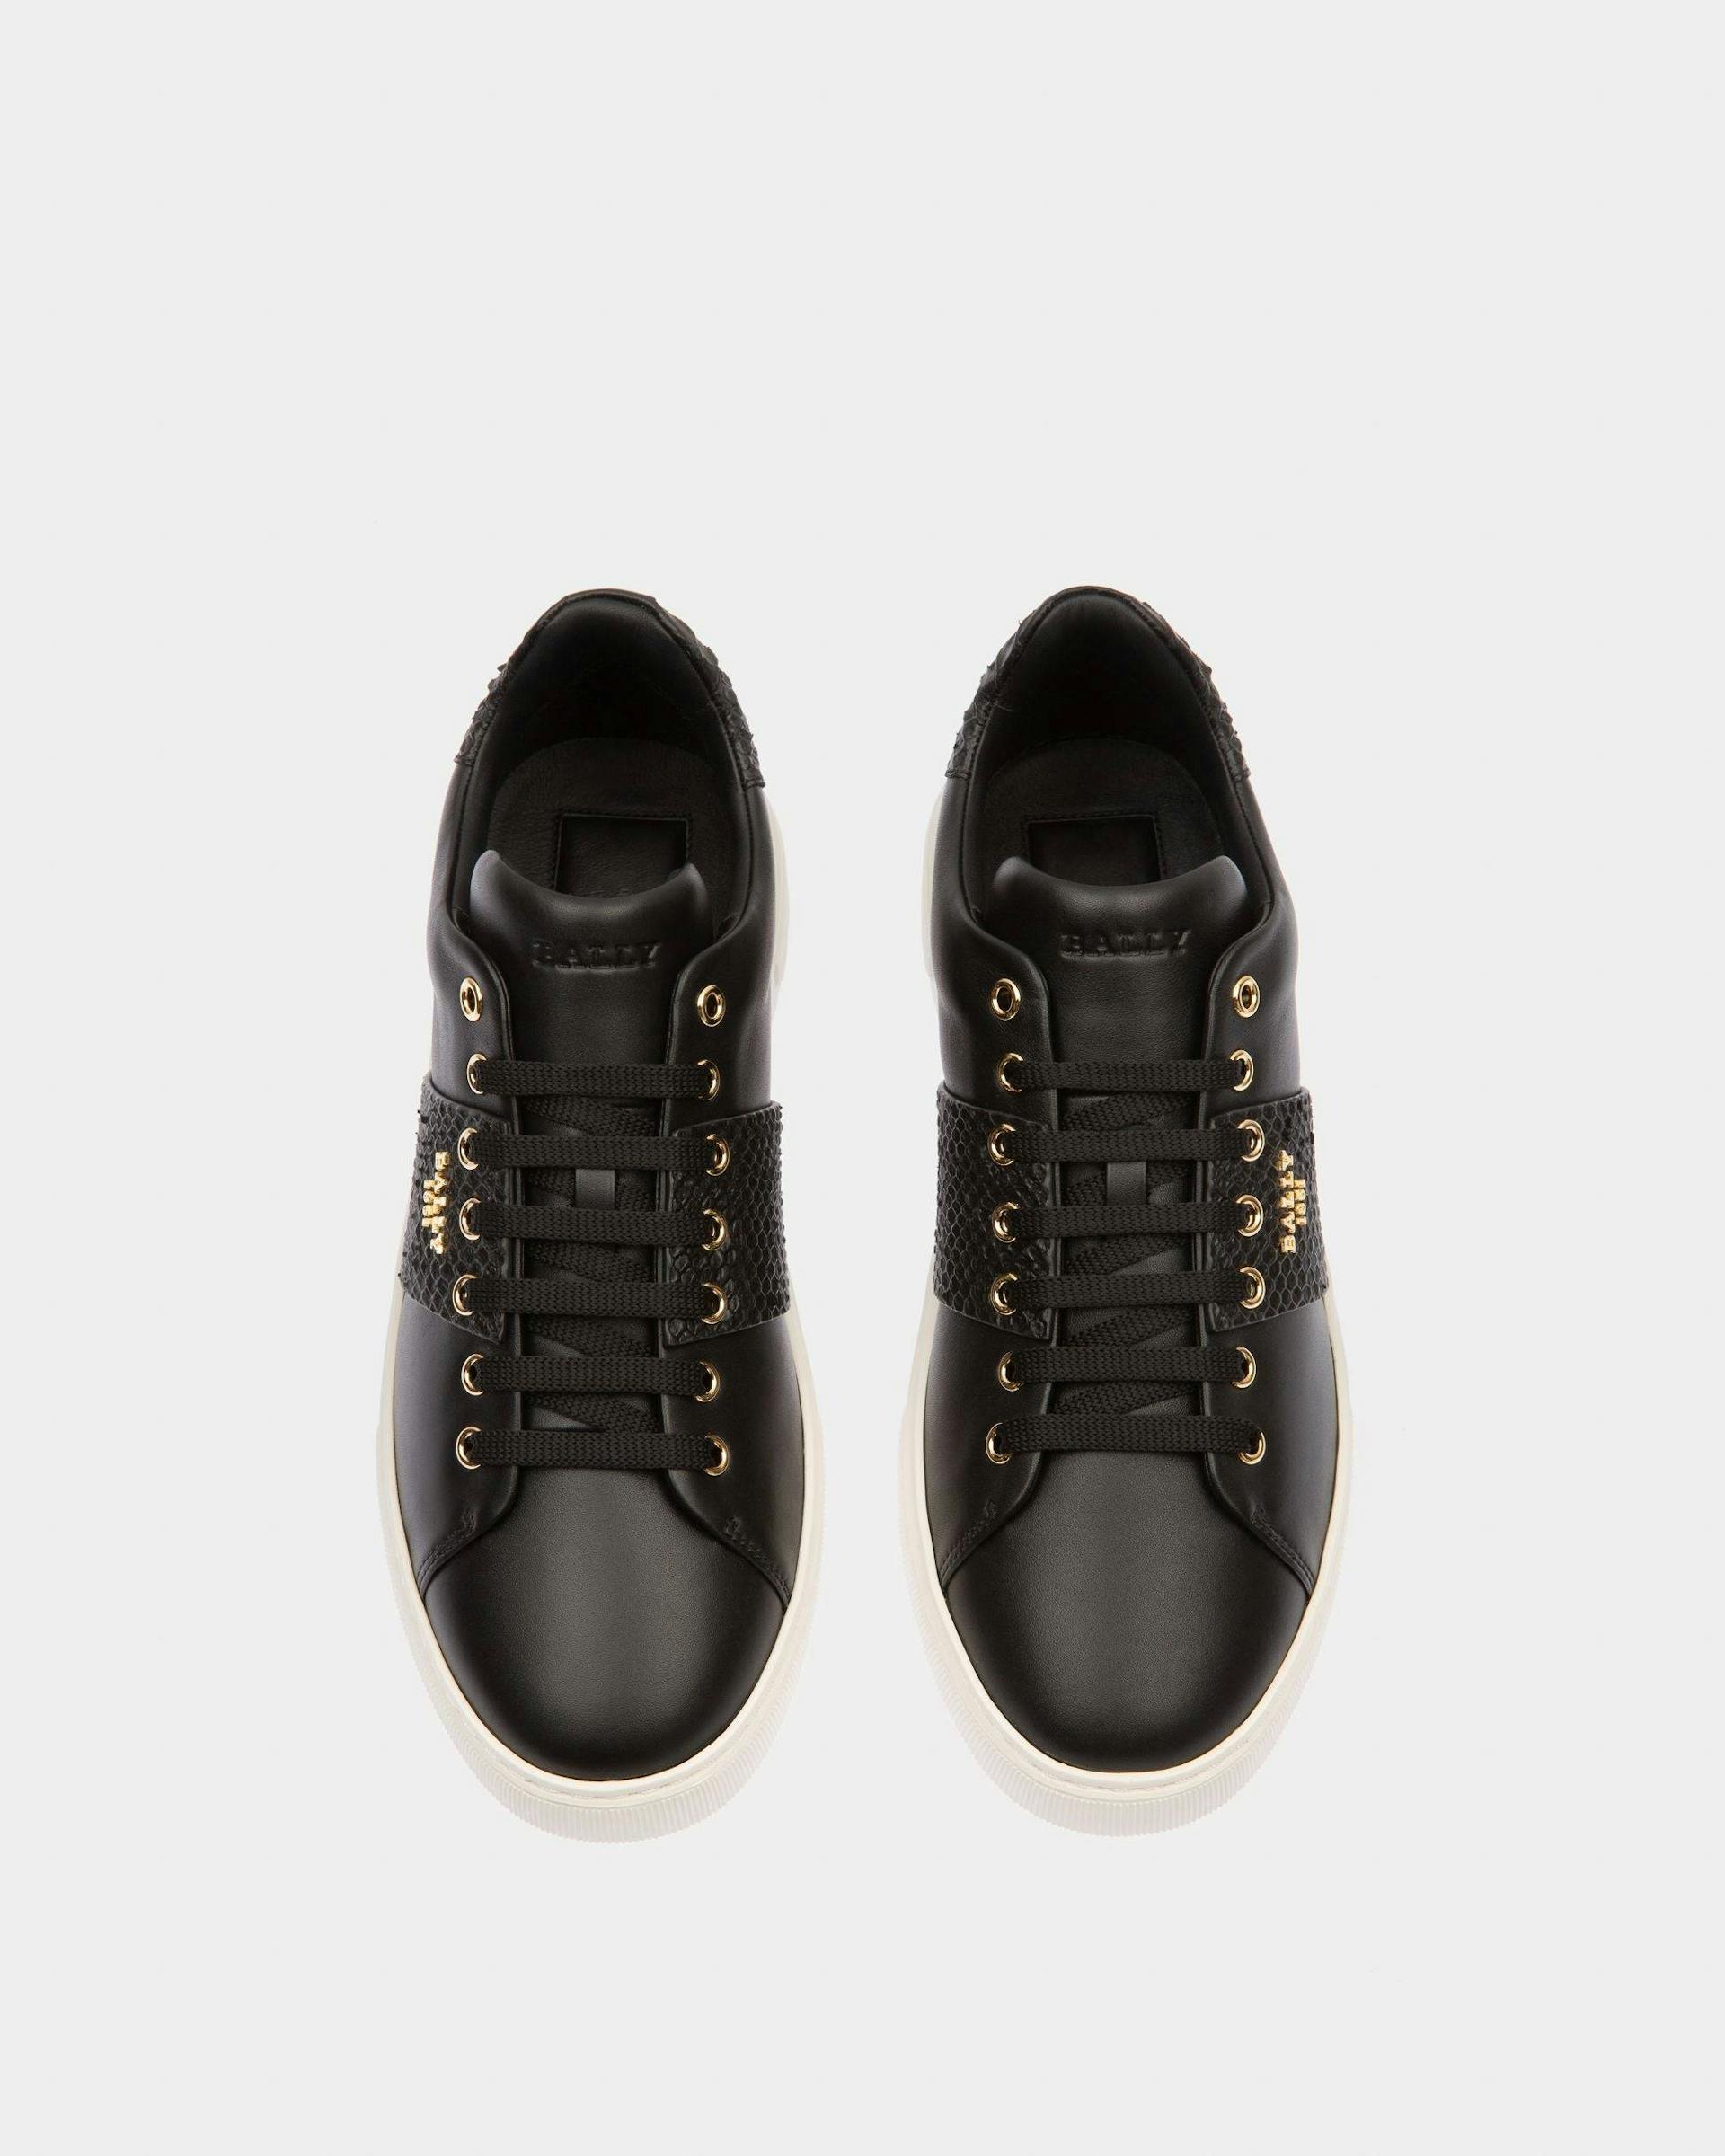 Mattye Leather Sneakers In Black - Men's - Bally - 02